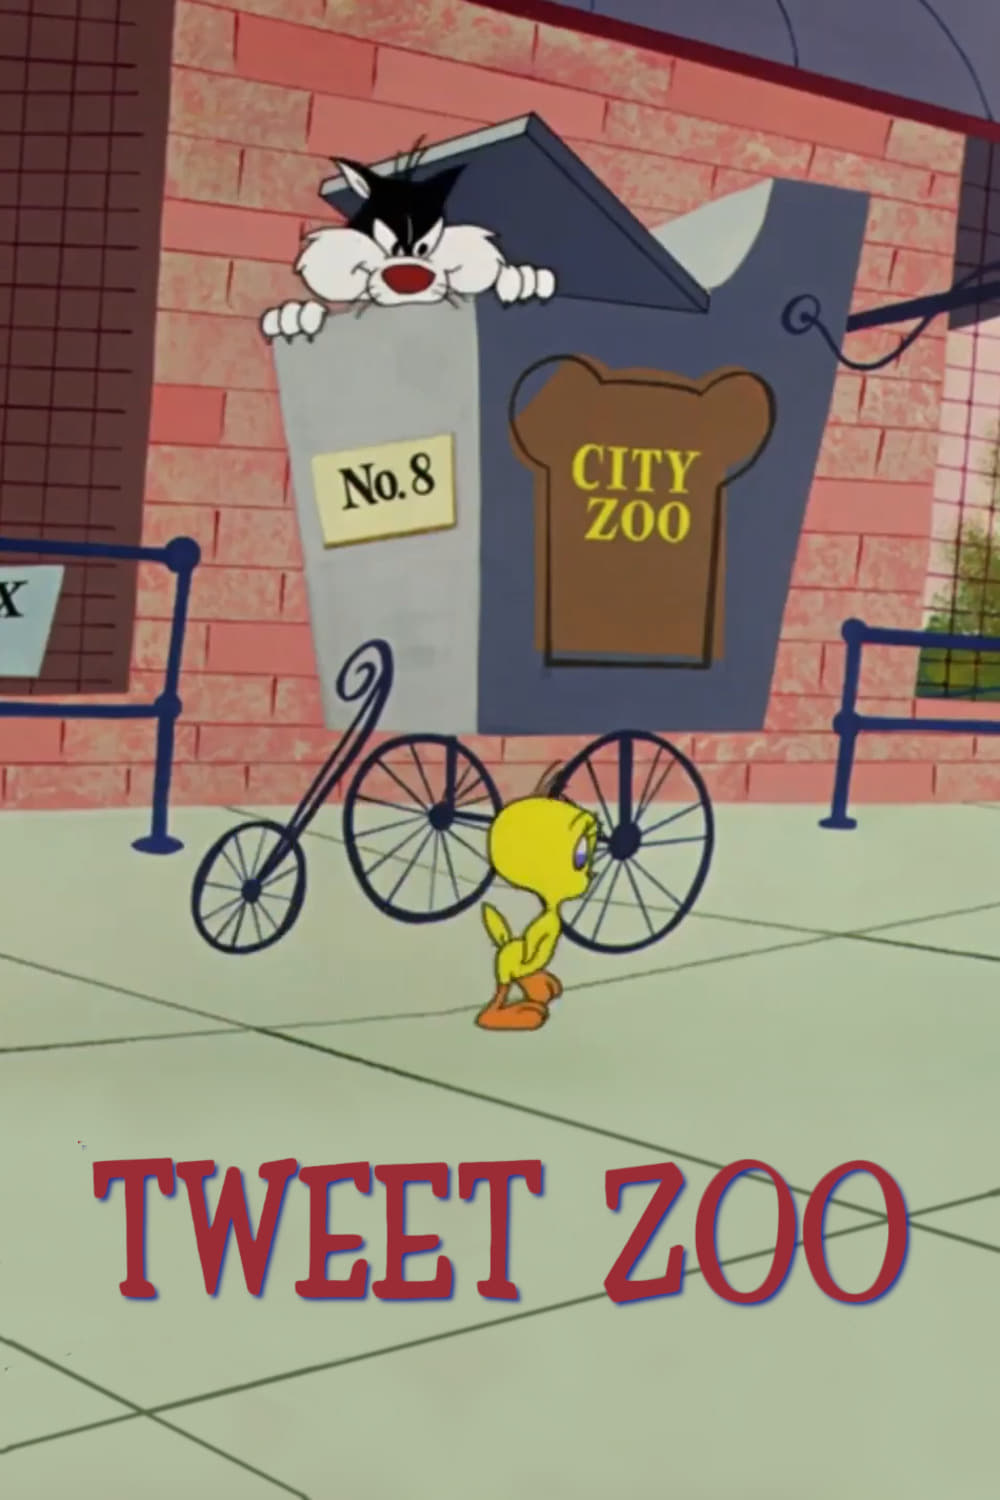 Tweet Zoo (1957)